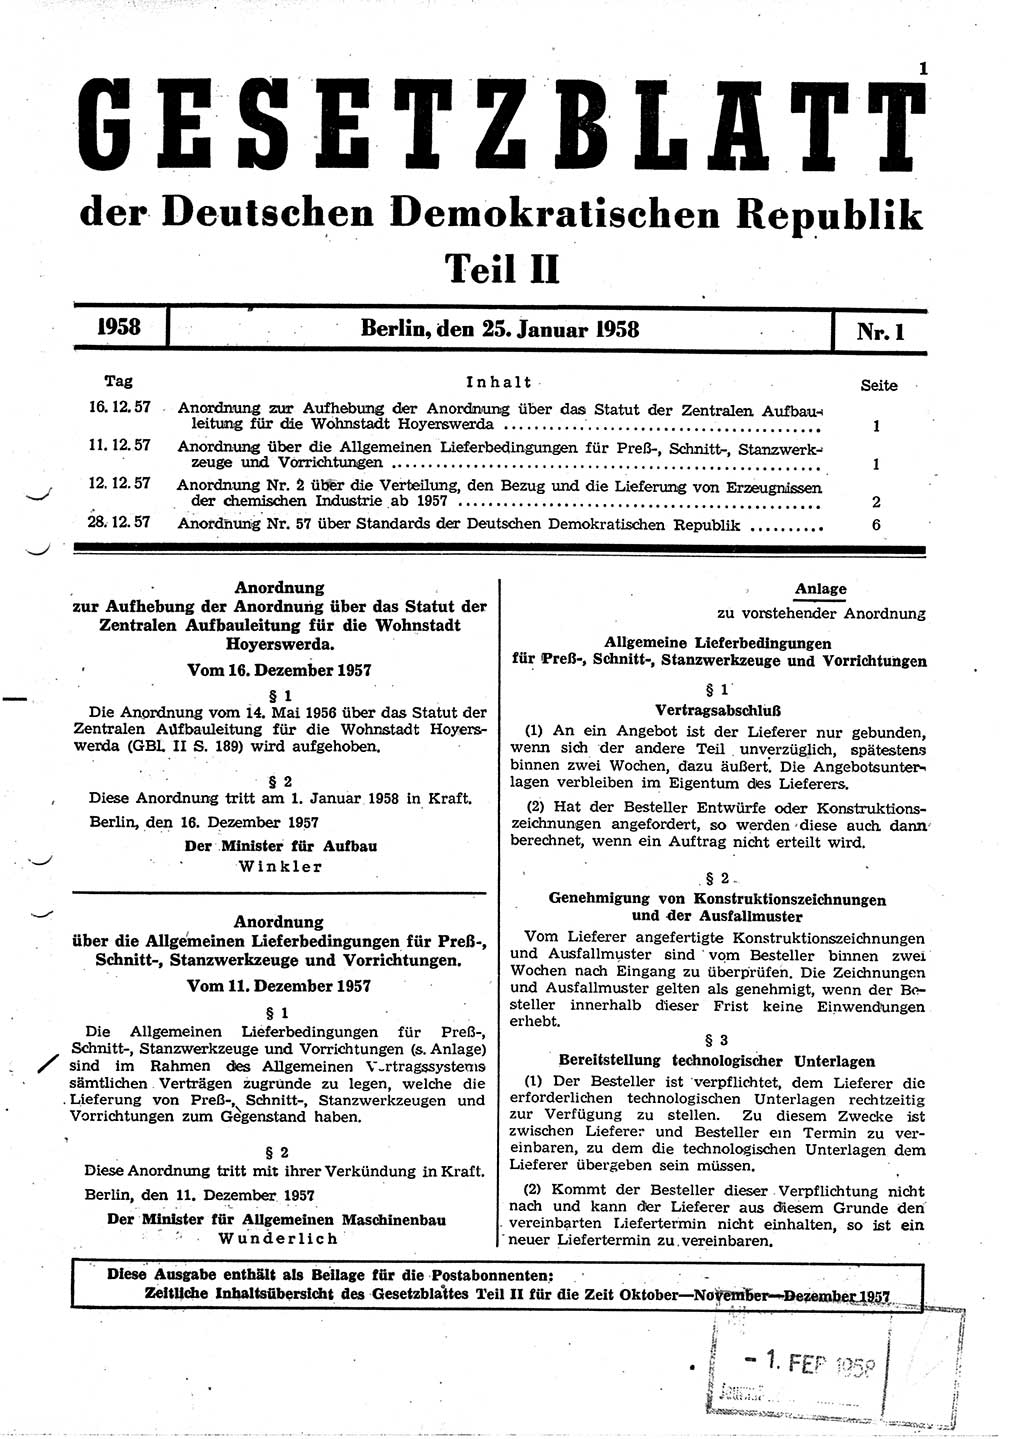 Gesetzblatt (GBl.) der Deutschen Demokratischen Republik (DDR) Teil ⅠⅠ 1958, Seite 1 (GBl. DDR ⅠⅠ 1958, S. 1)